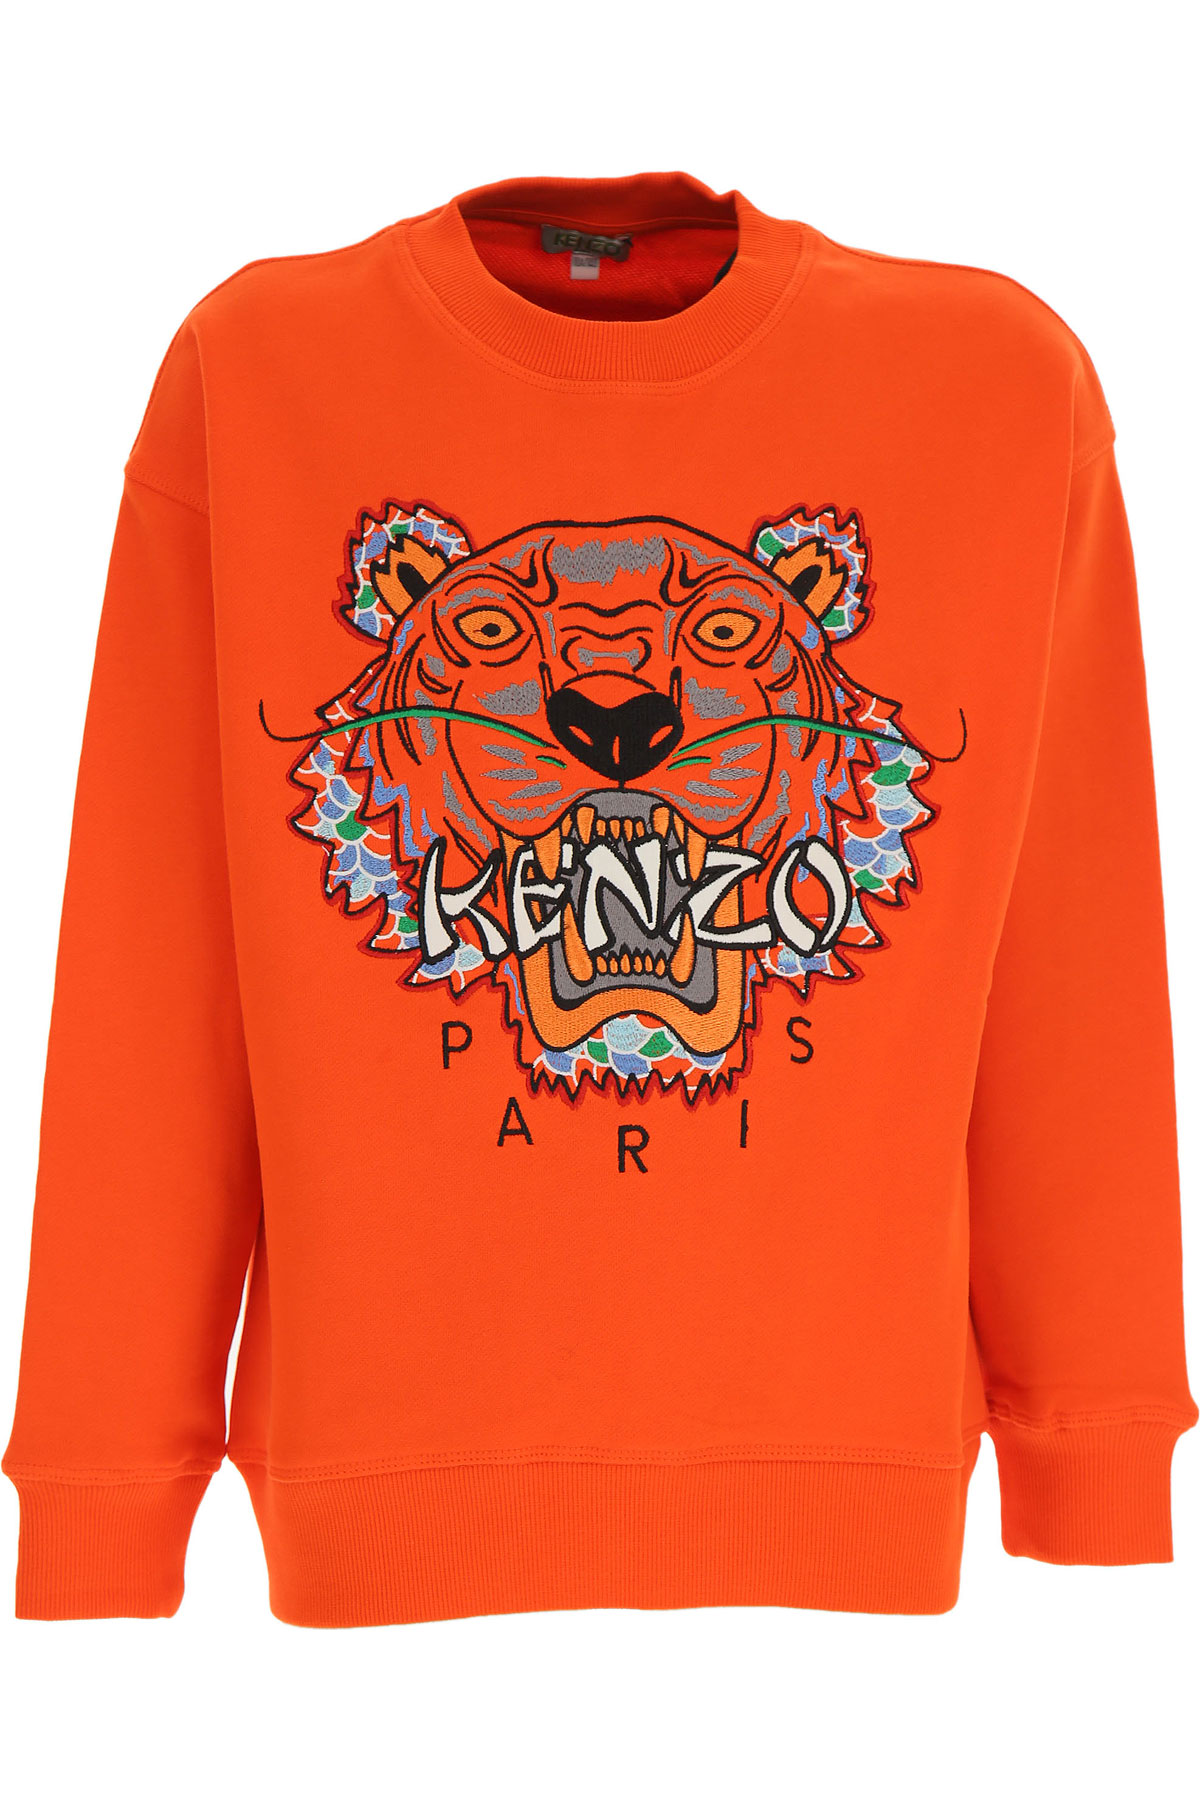 Kenzo Kinder Sweatshirt & Kapuzenpullover für Jungen Günstig im Sale, Orange, Baumwolle, 2017, 10Y 12Y 14Y 2Y 3Y 4Y 5Y 6Y 8Y